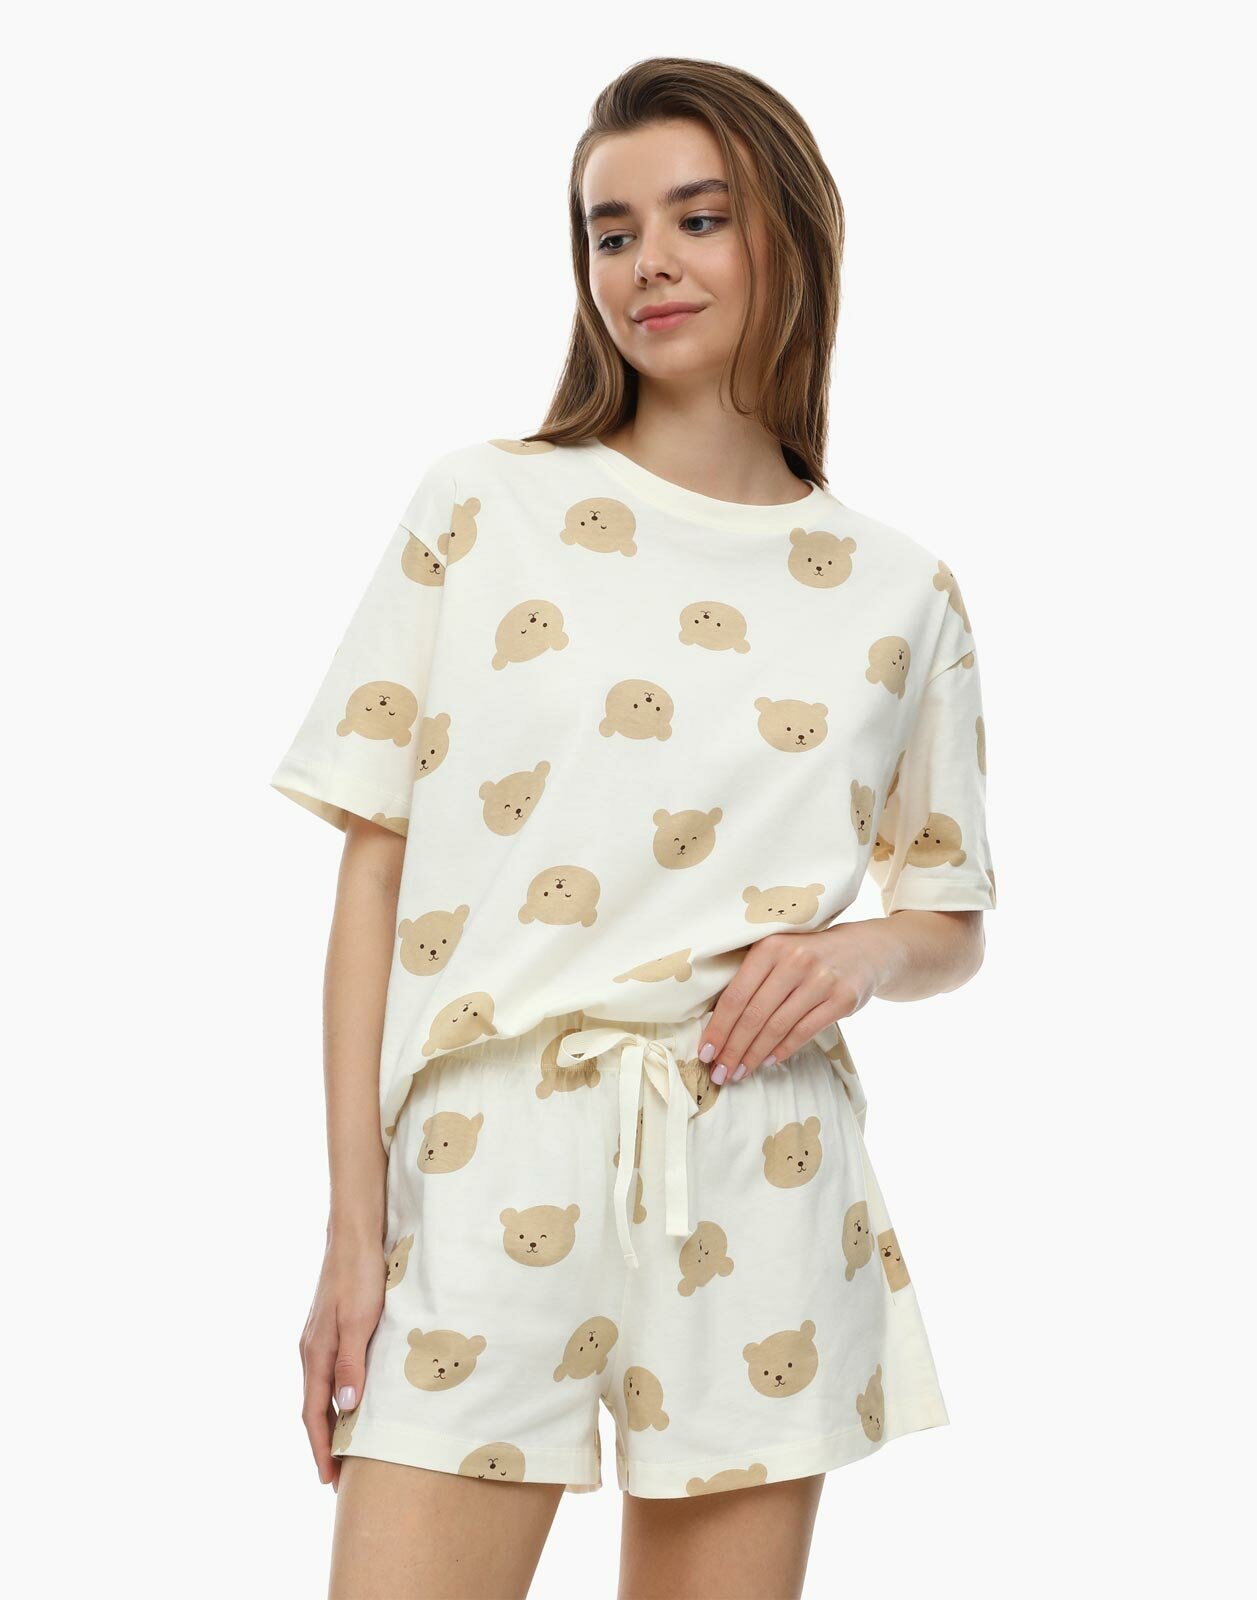 Бежевая пижама с медведями, XL (48)